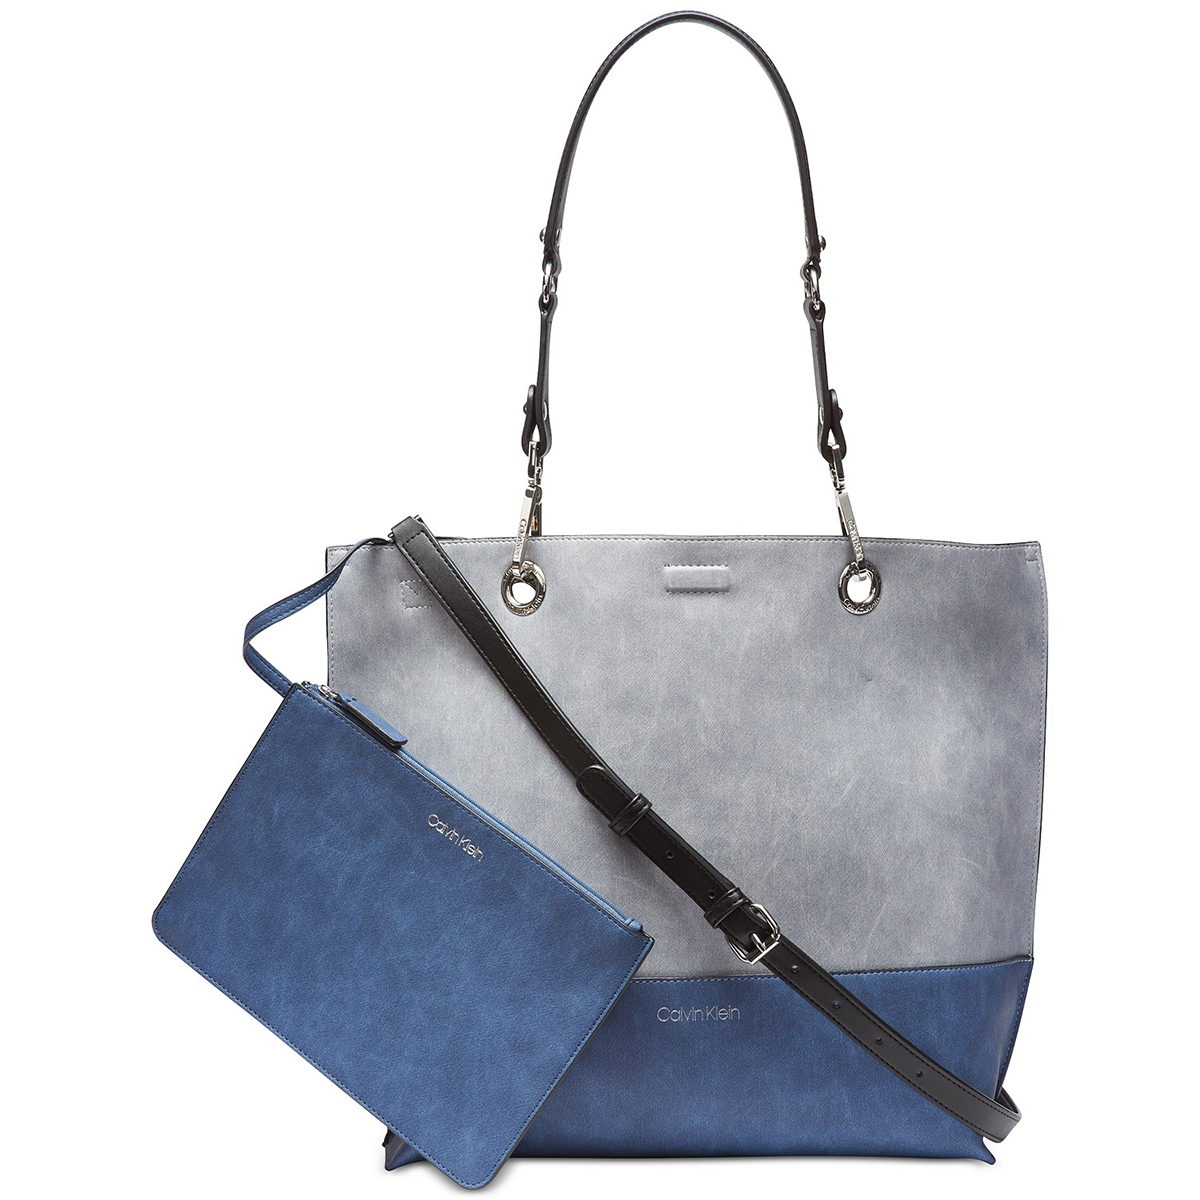 White & Blue Handbag Calvin Klein for Sale in San Diego, CA - OfferUp